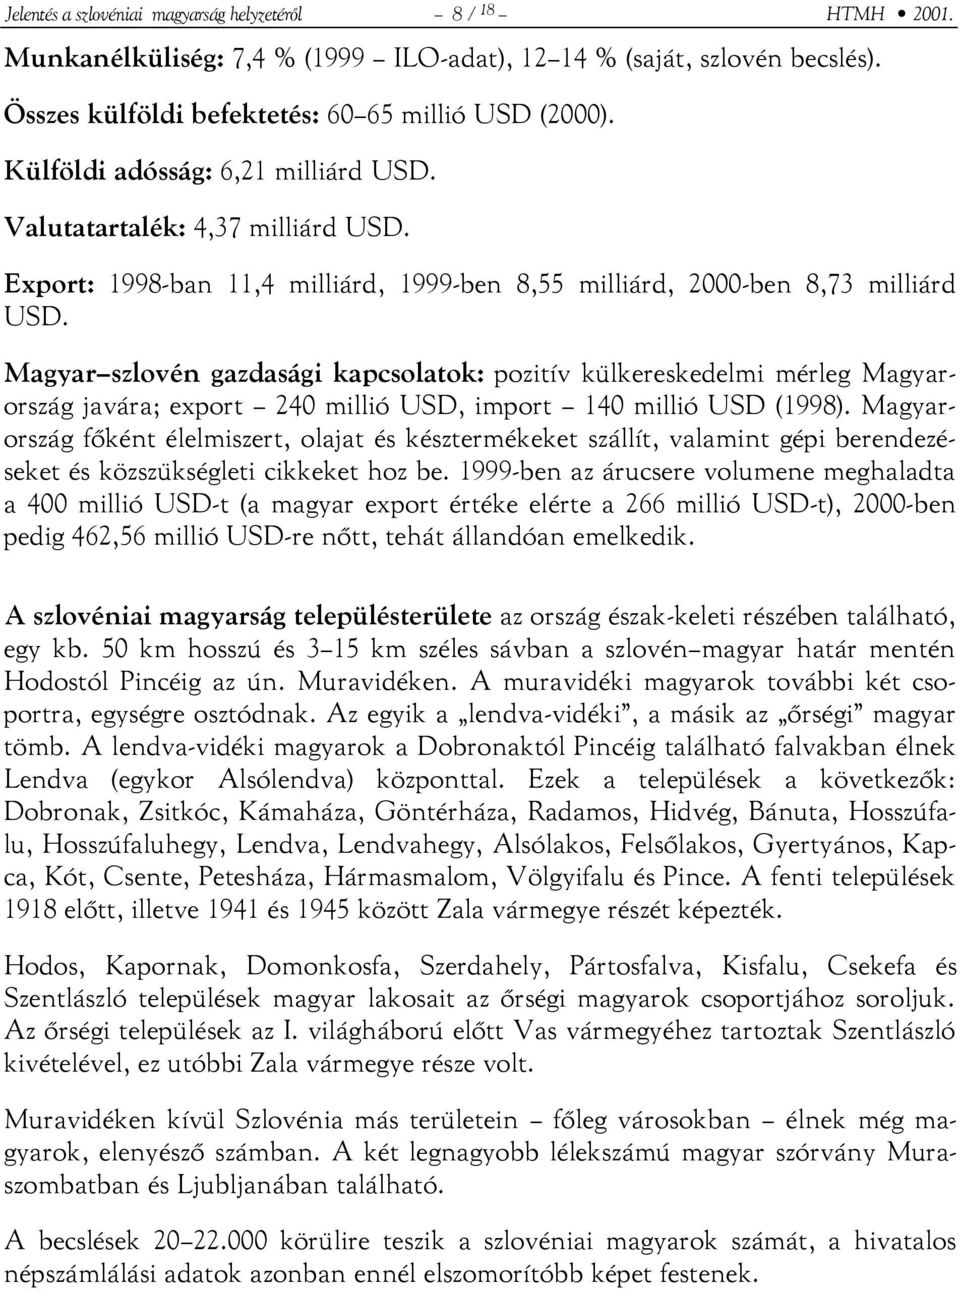 Magyar szlovén gazdasági kapcsolatok: pozitív külkereskedelmi mérleg Magyarország javára; export 240 millió USD, import 140 millió USD (1998).